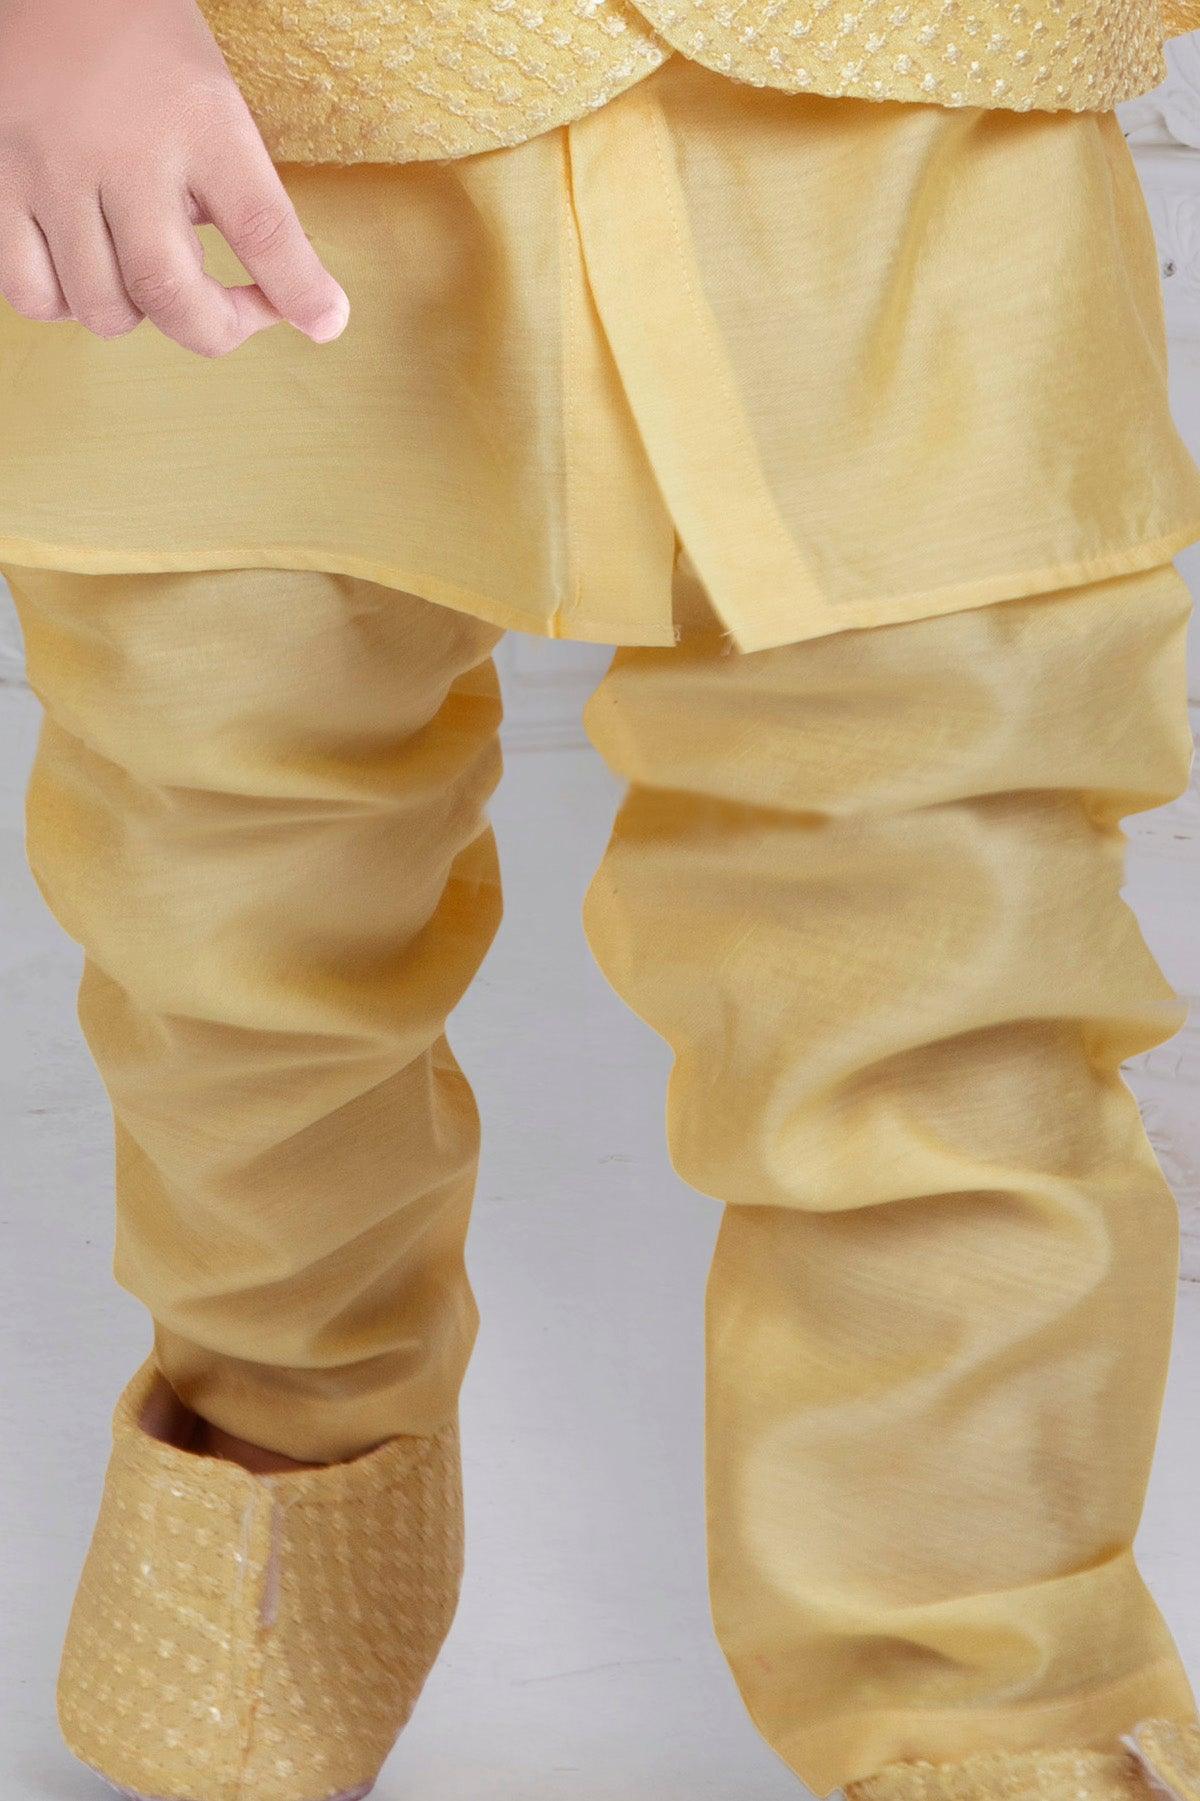 Yellow monochrome kurta with Nehru jacket and matching shoes set - Lagorii Kids